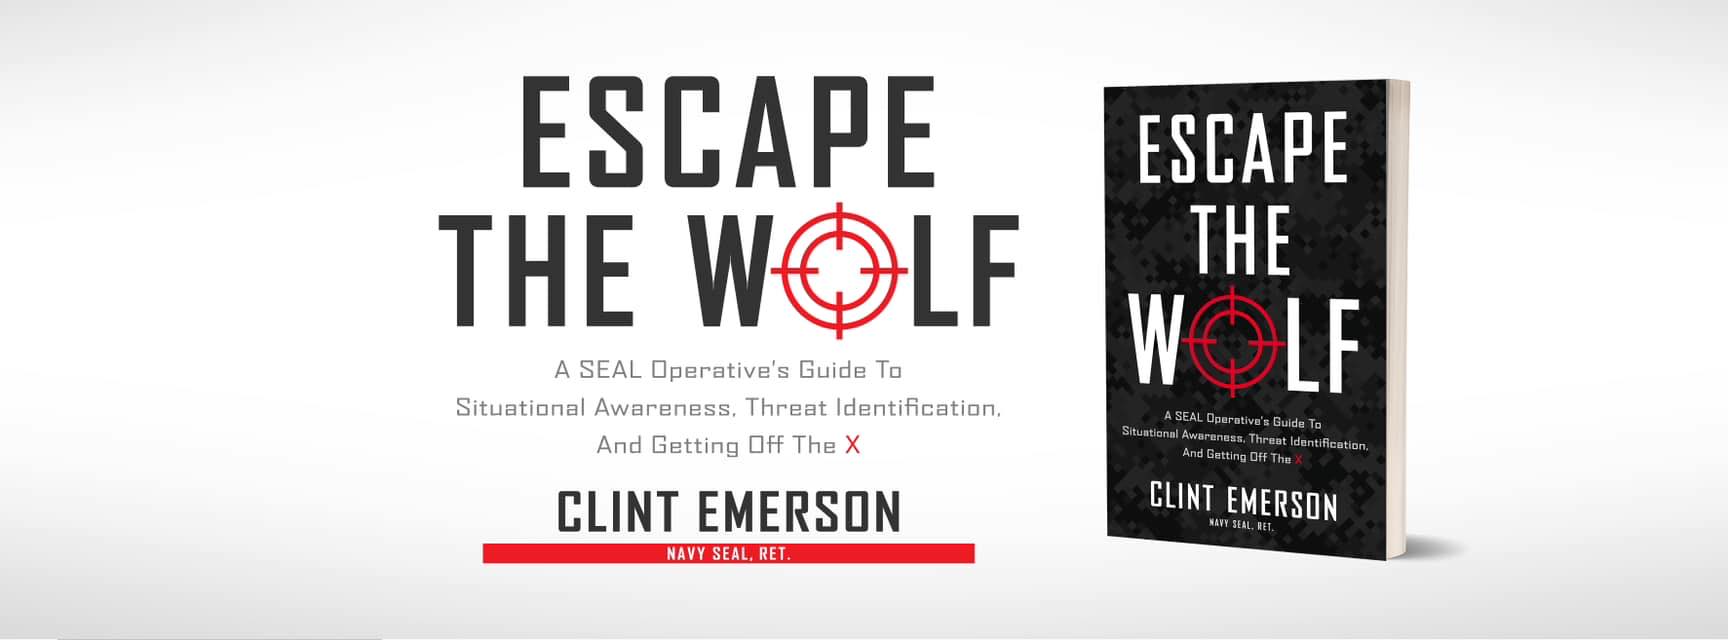 Escape the wolf book